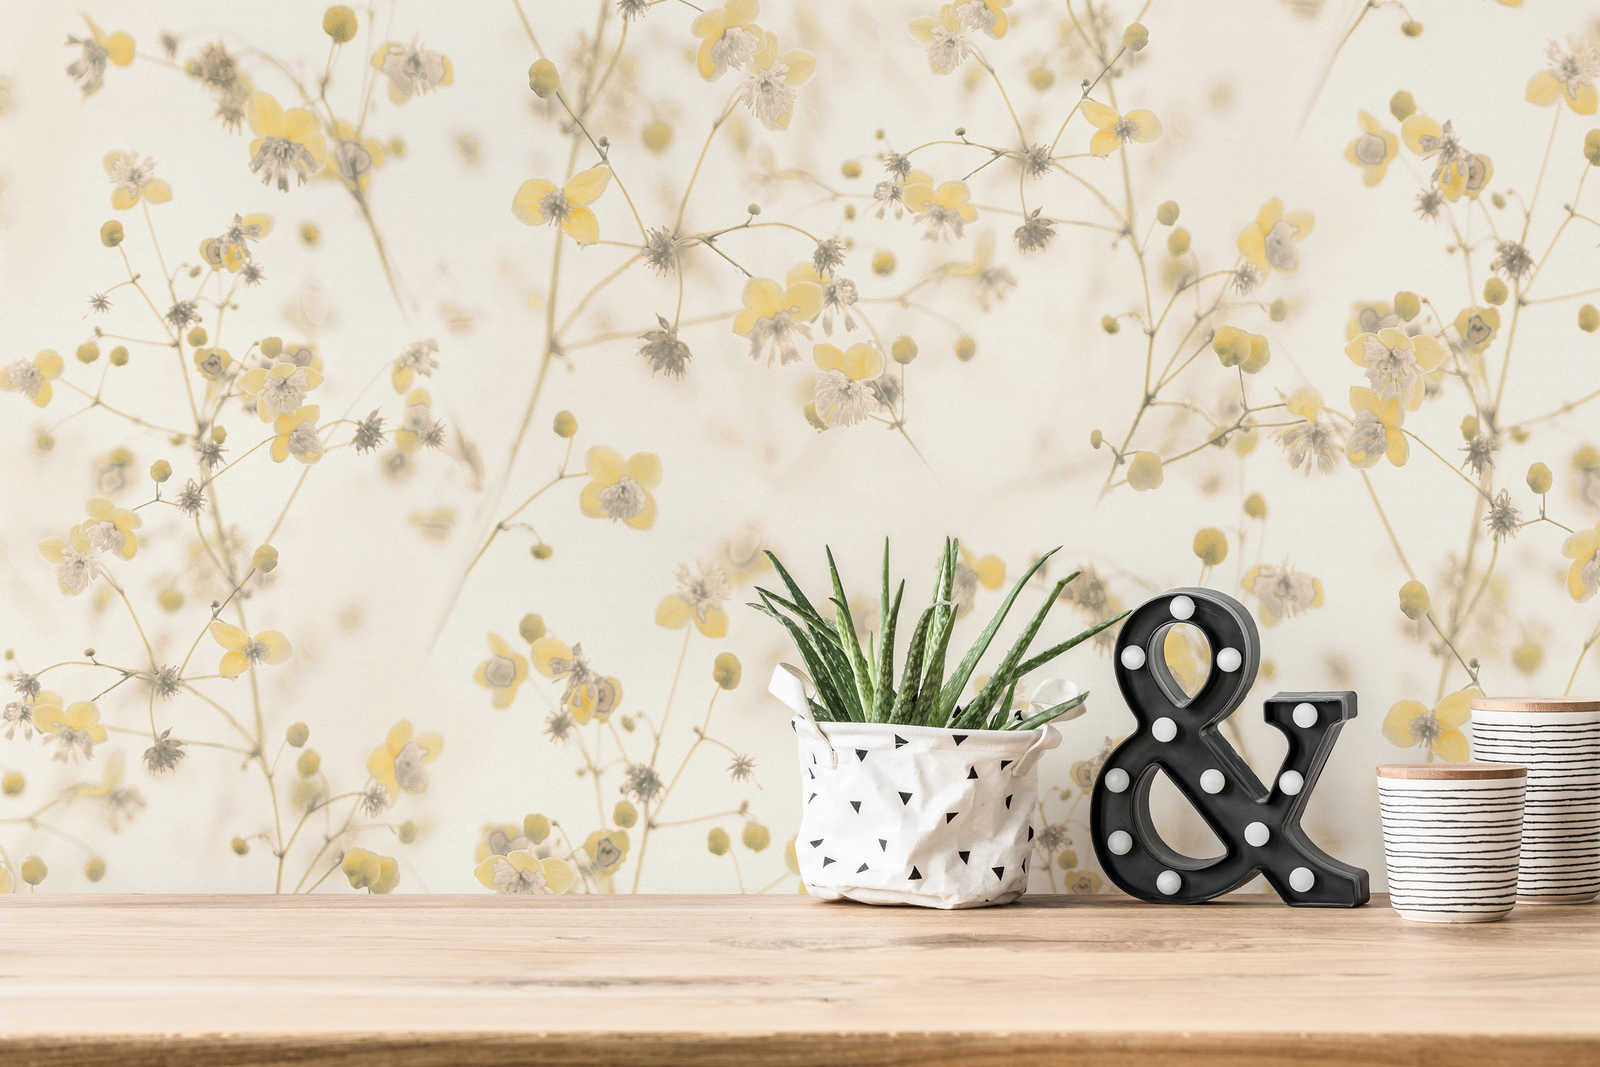             Blumen Tapete Cottage Core Design – Creme, Gelb
        